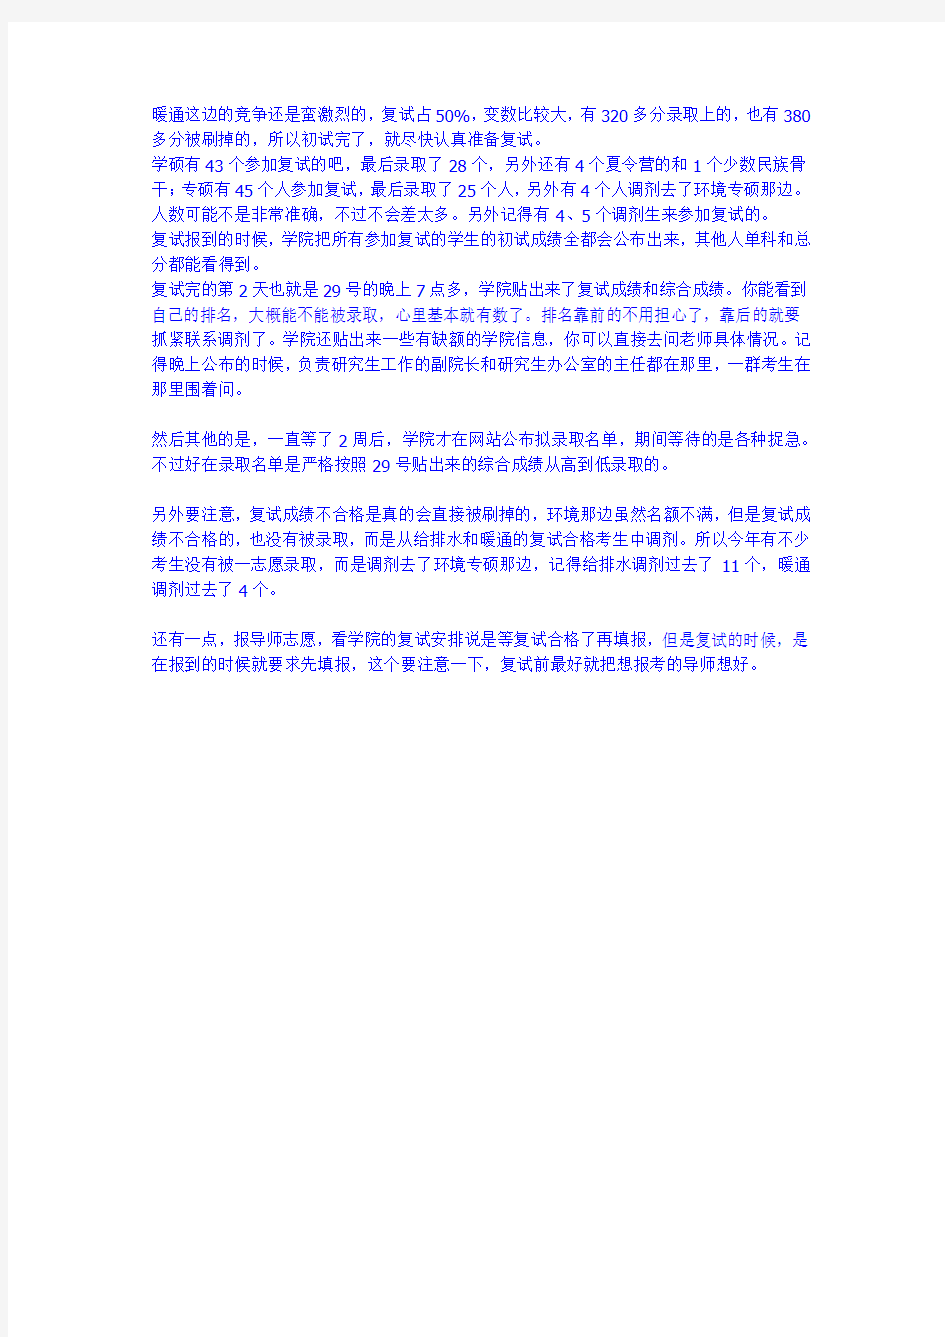 【复试真题】2014年重庆大学-暖通空调专业复试回忆版